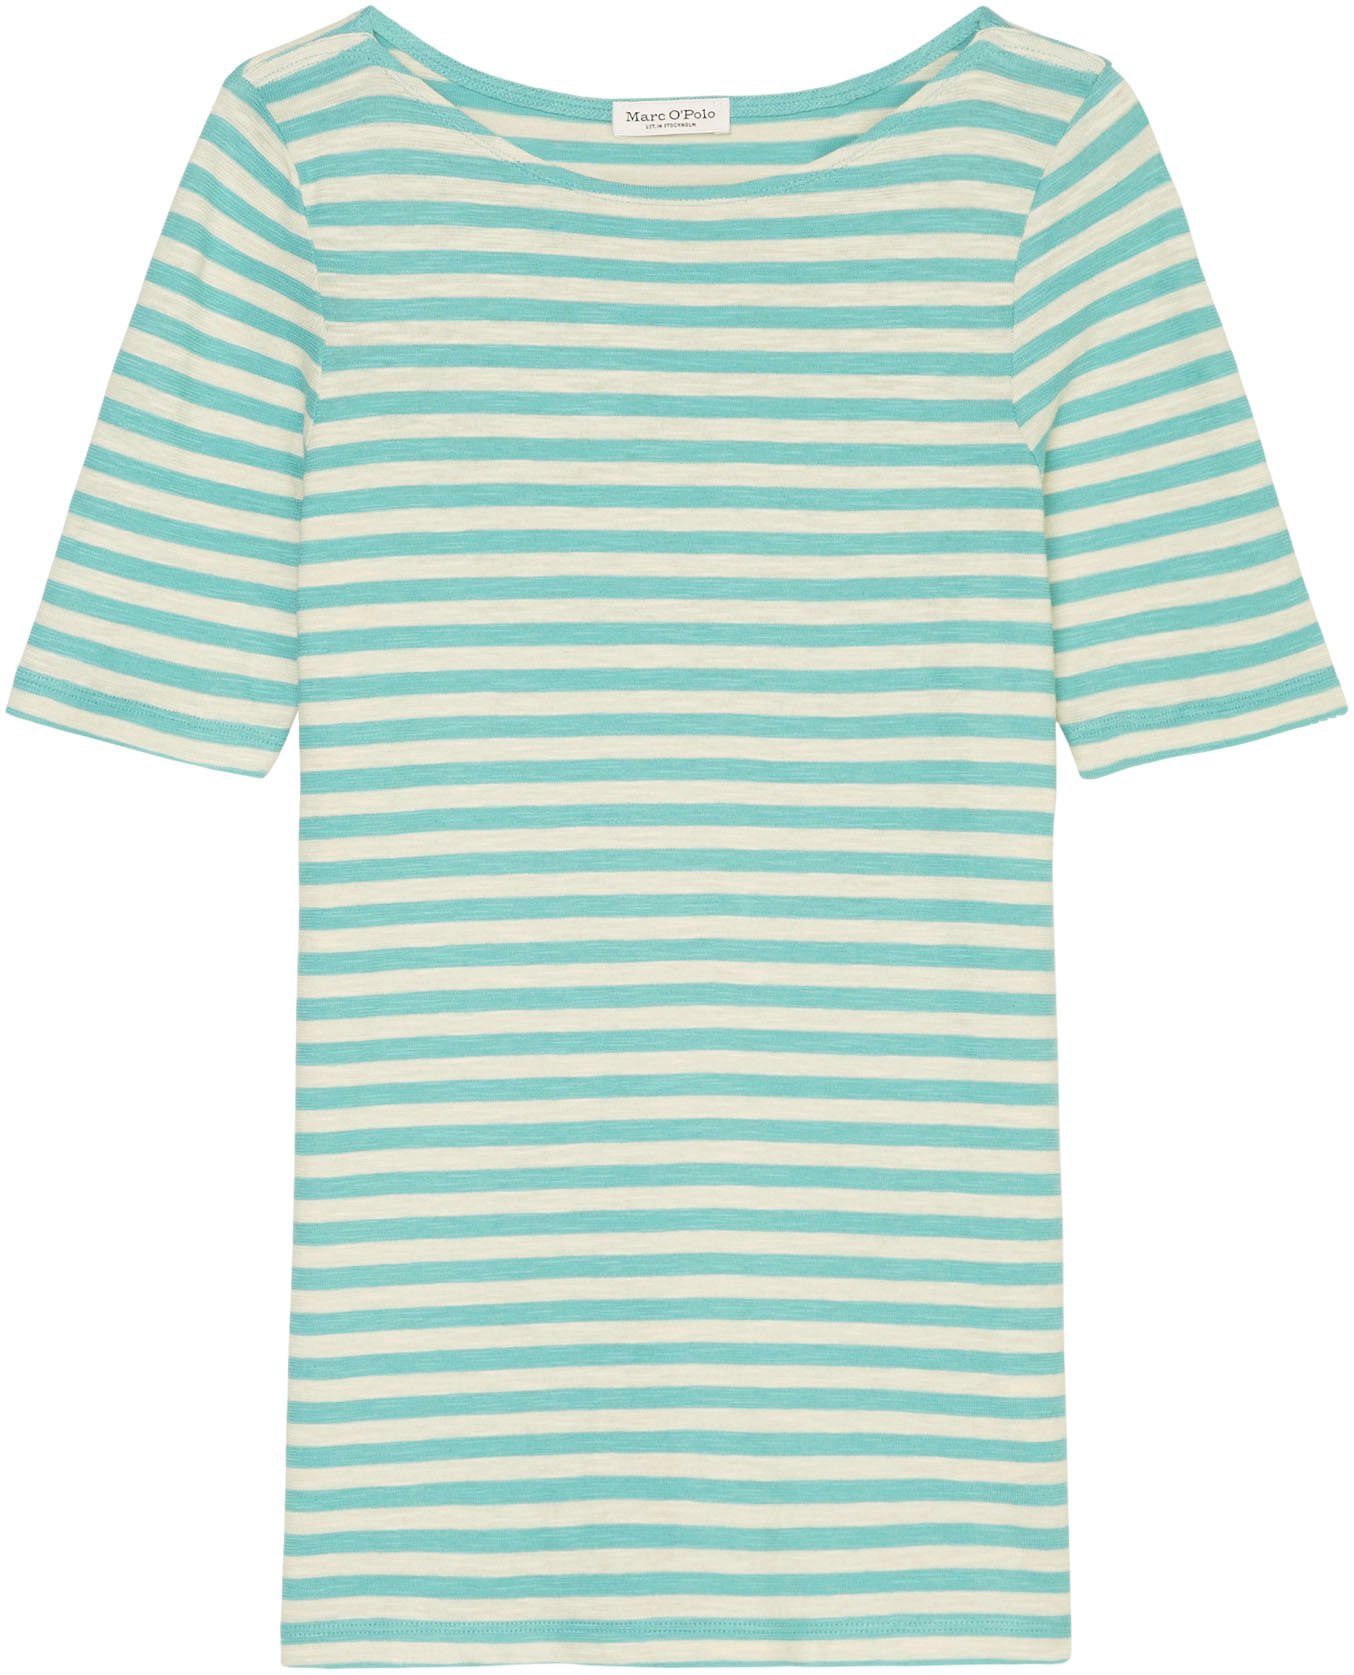 O'Polo Marc blue T-Shirt multi/sea